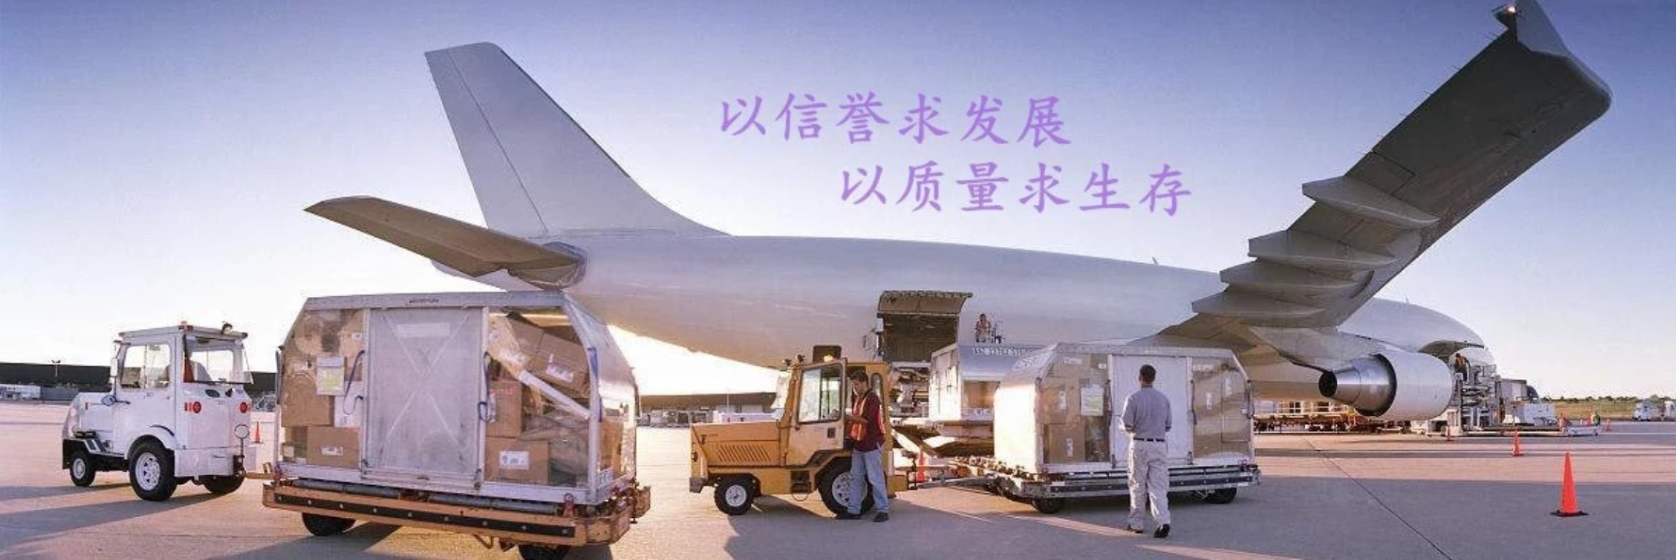 上海到摩洛哥空运订舱货代专线口罩洗手液浦东机场物流